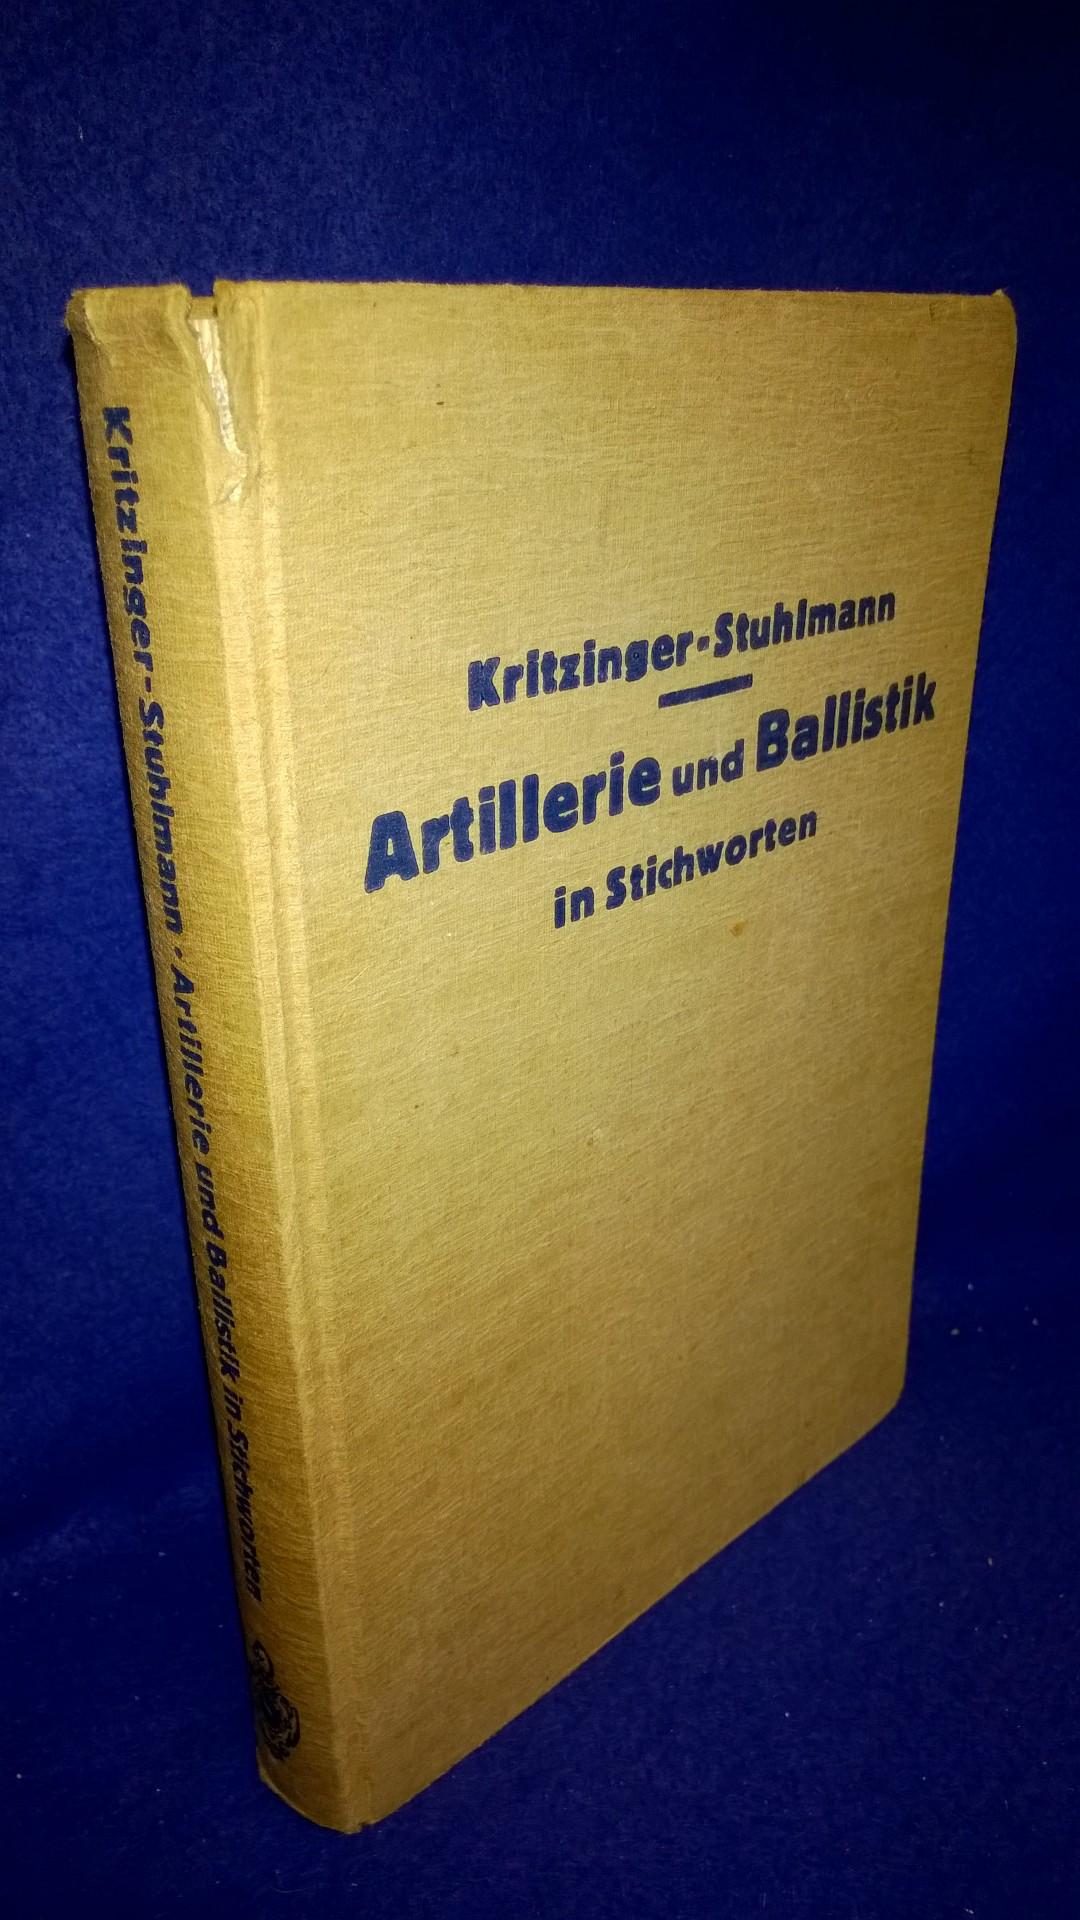 Artillerie und Ballistik in Stichworten. 